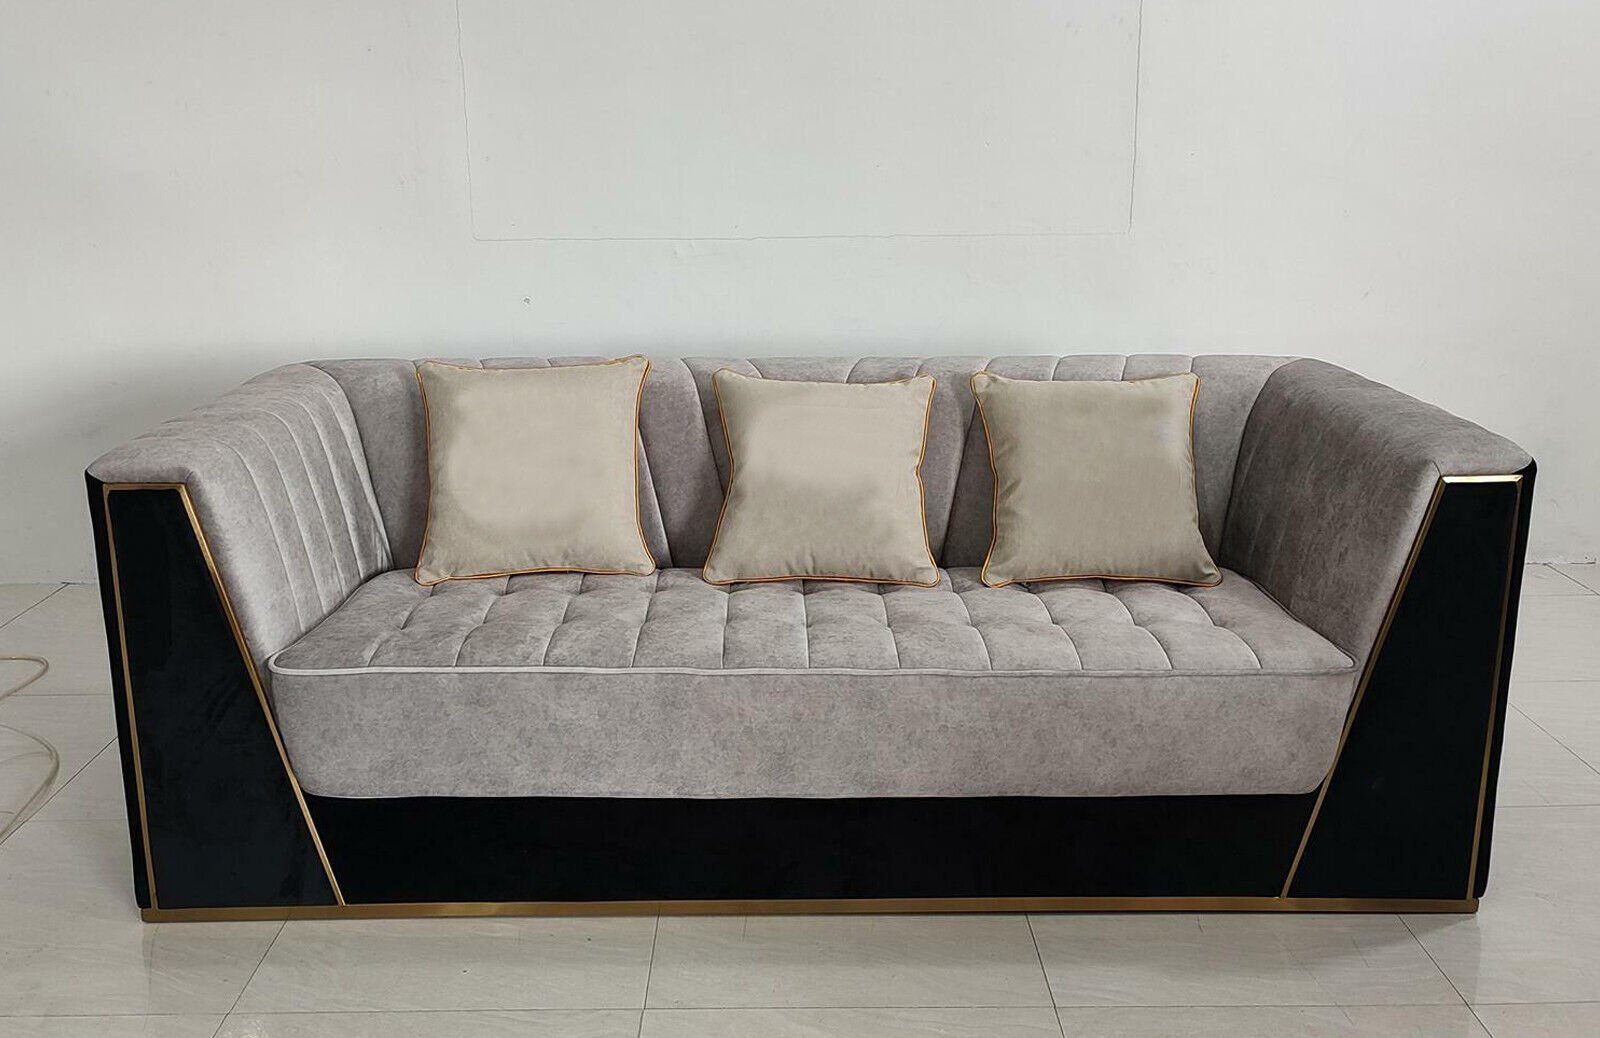 [Umfangreiche Produktpalette] JVmoebel Sofa, Sofa 3 Luxus Textil Sofas Dreisitzer Designer Möbel Sitzer Polster